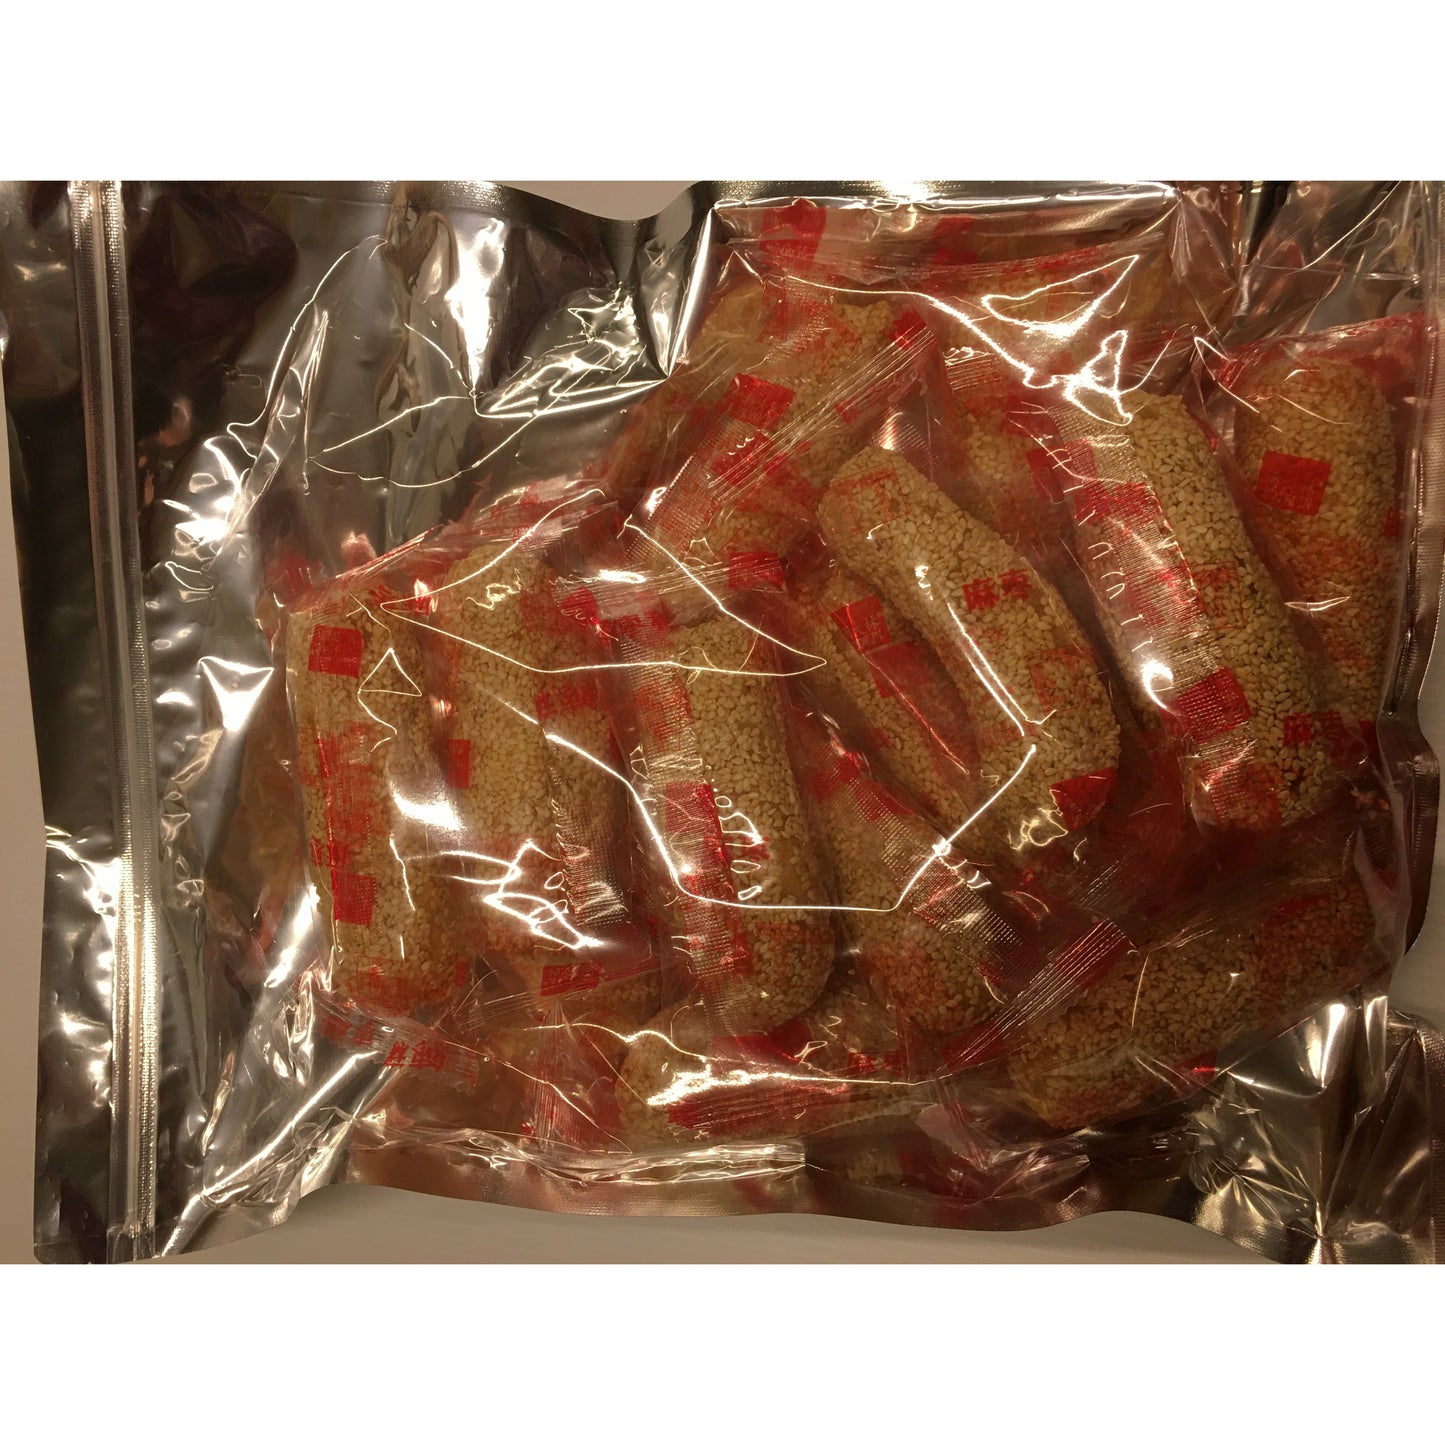 1-Sesame sticks (sesame sticks, 1 pound/bag